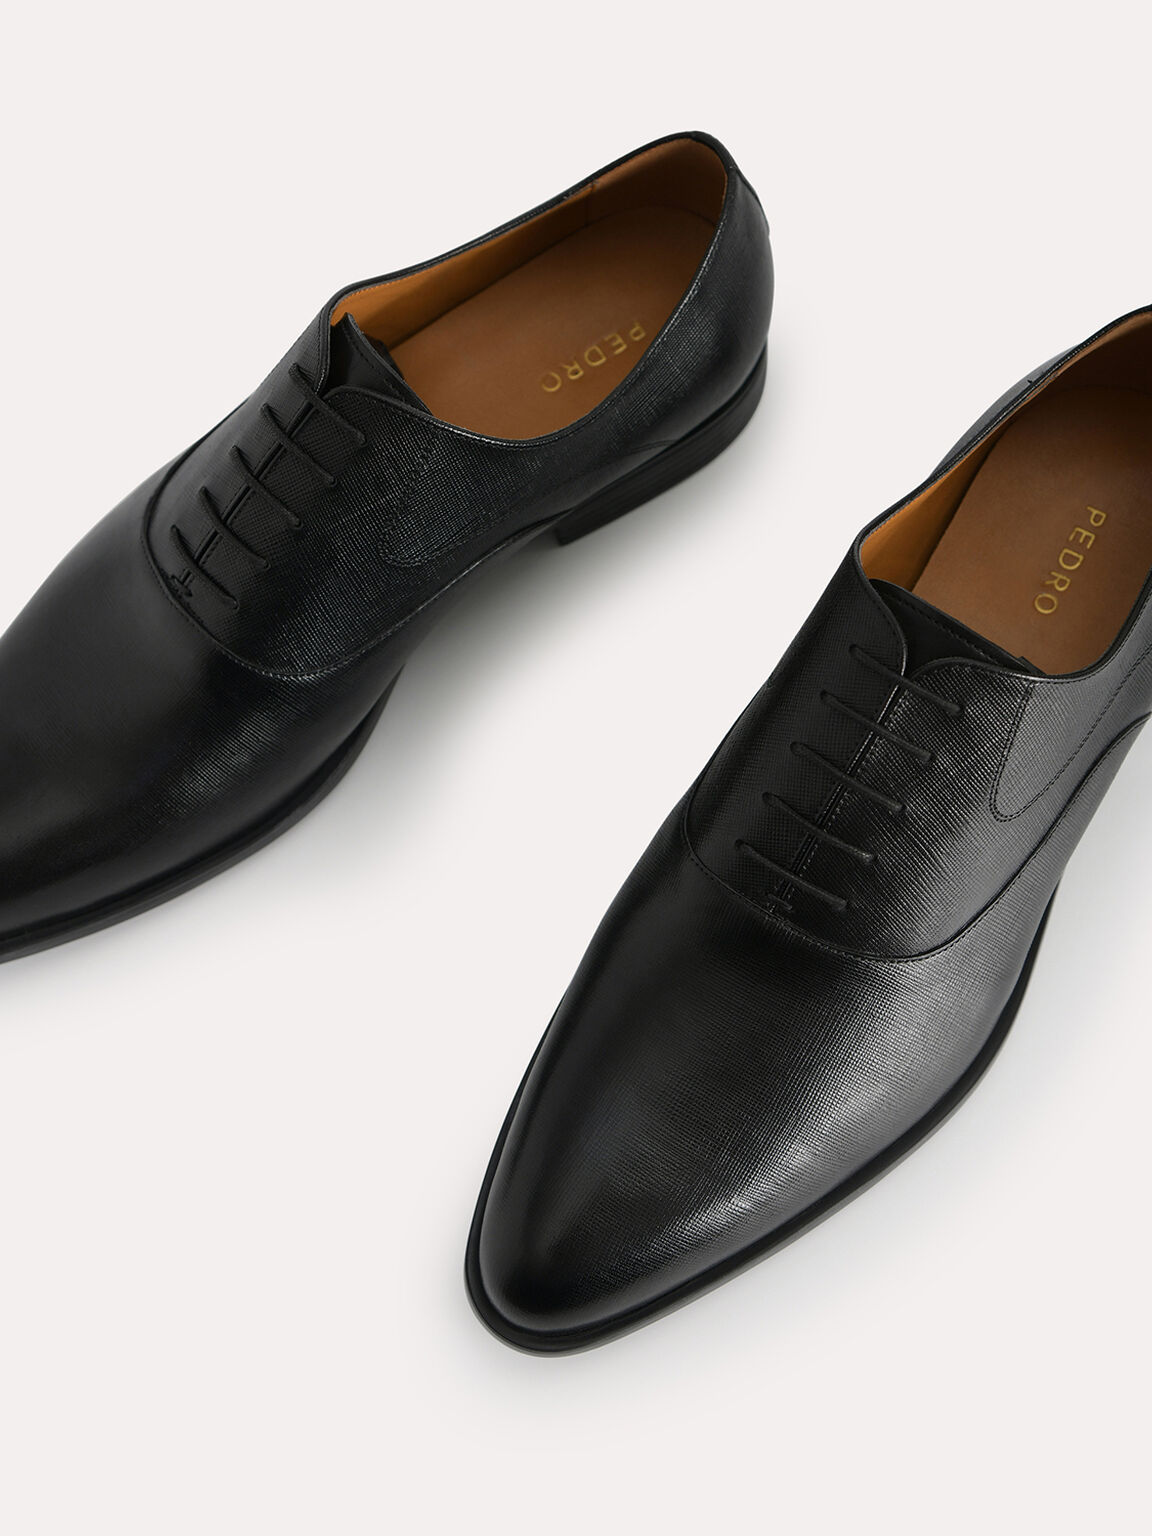 織紋皮革牛津鞋, 黑色, hi-res